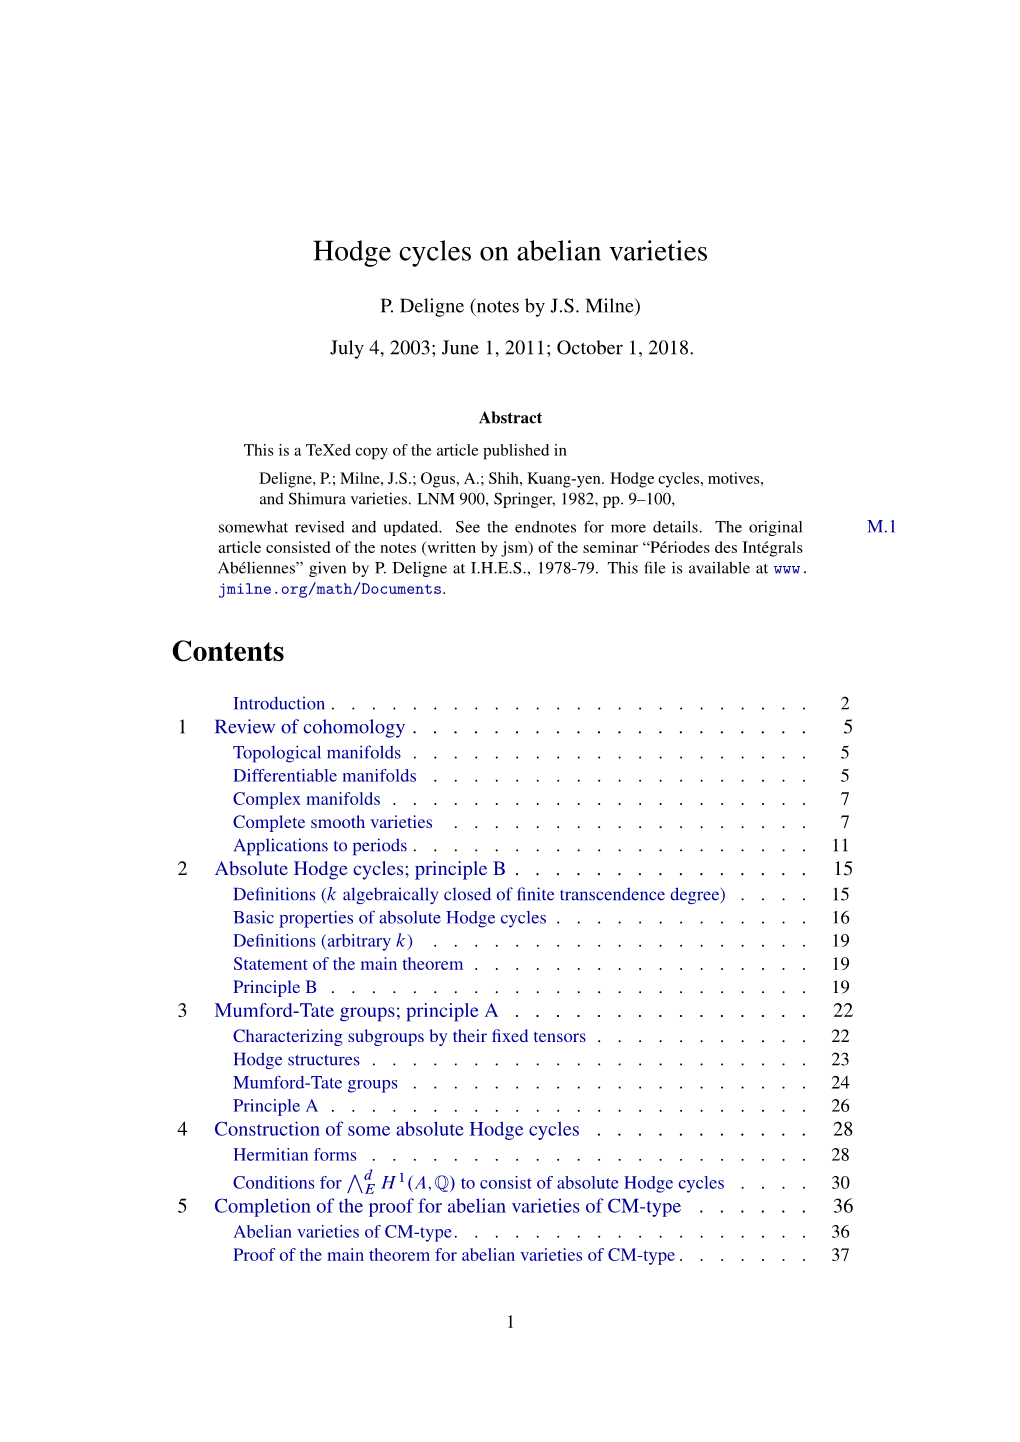 Hodge Cycles on Abelian Varieties